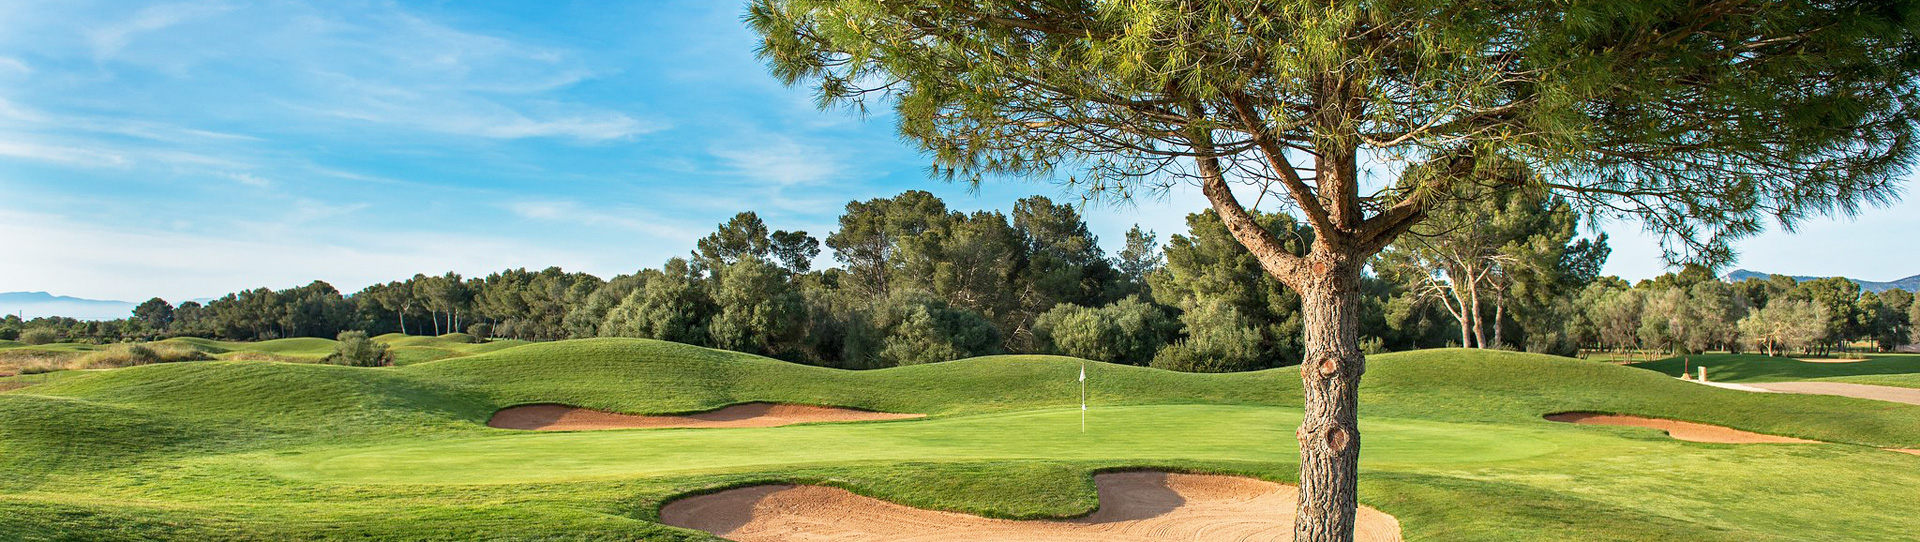 Spain golf courses - Son Antem Golf Course West - Photo 1